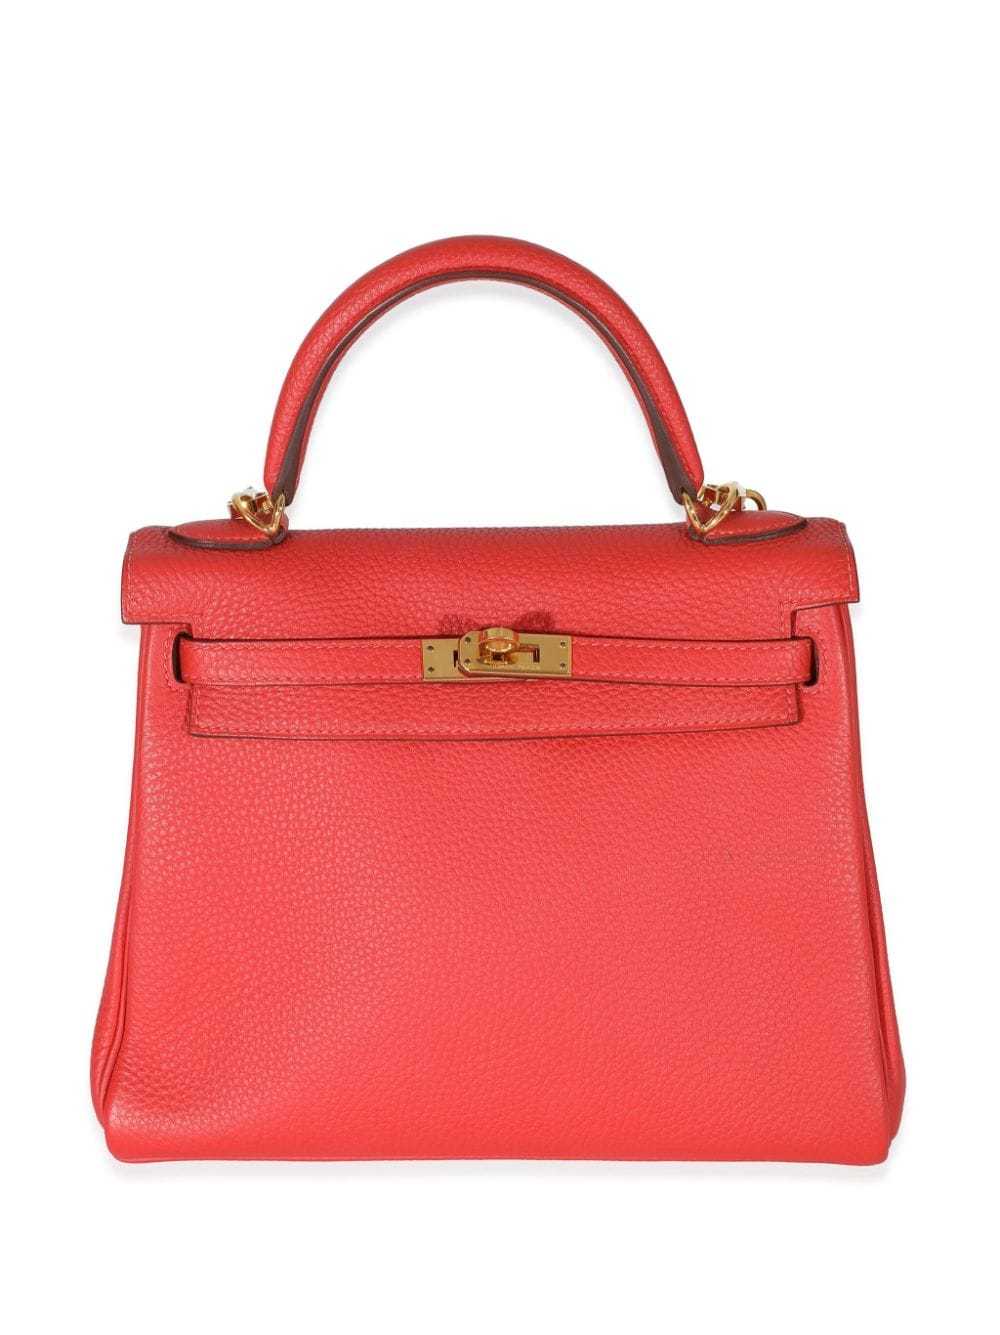 Hermès Pre-Owned 2014 Kelly 25 handbag - Red - image 1